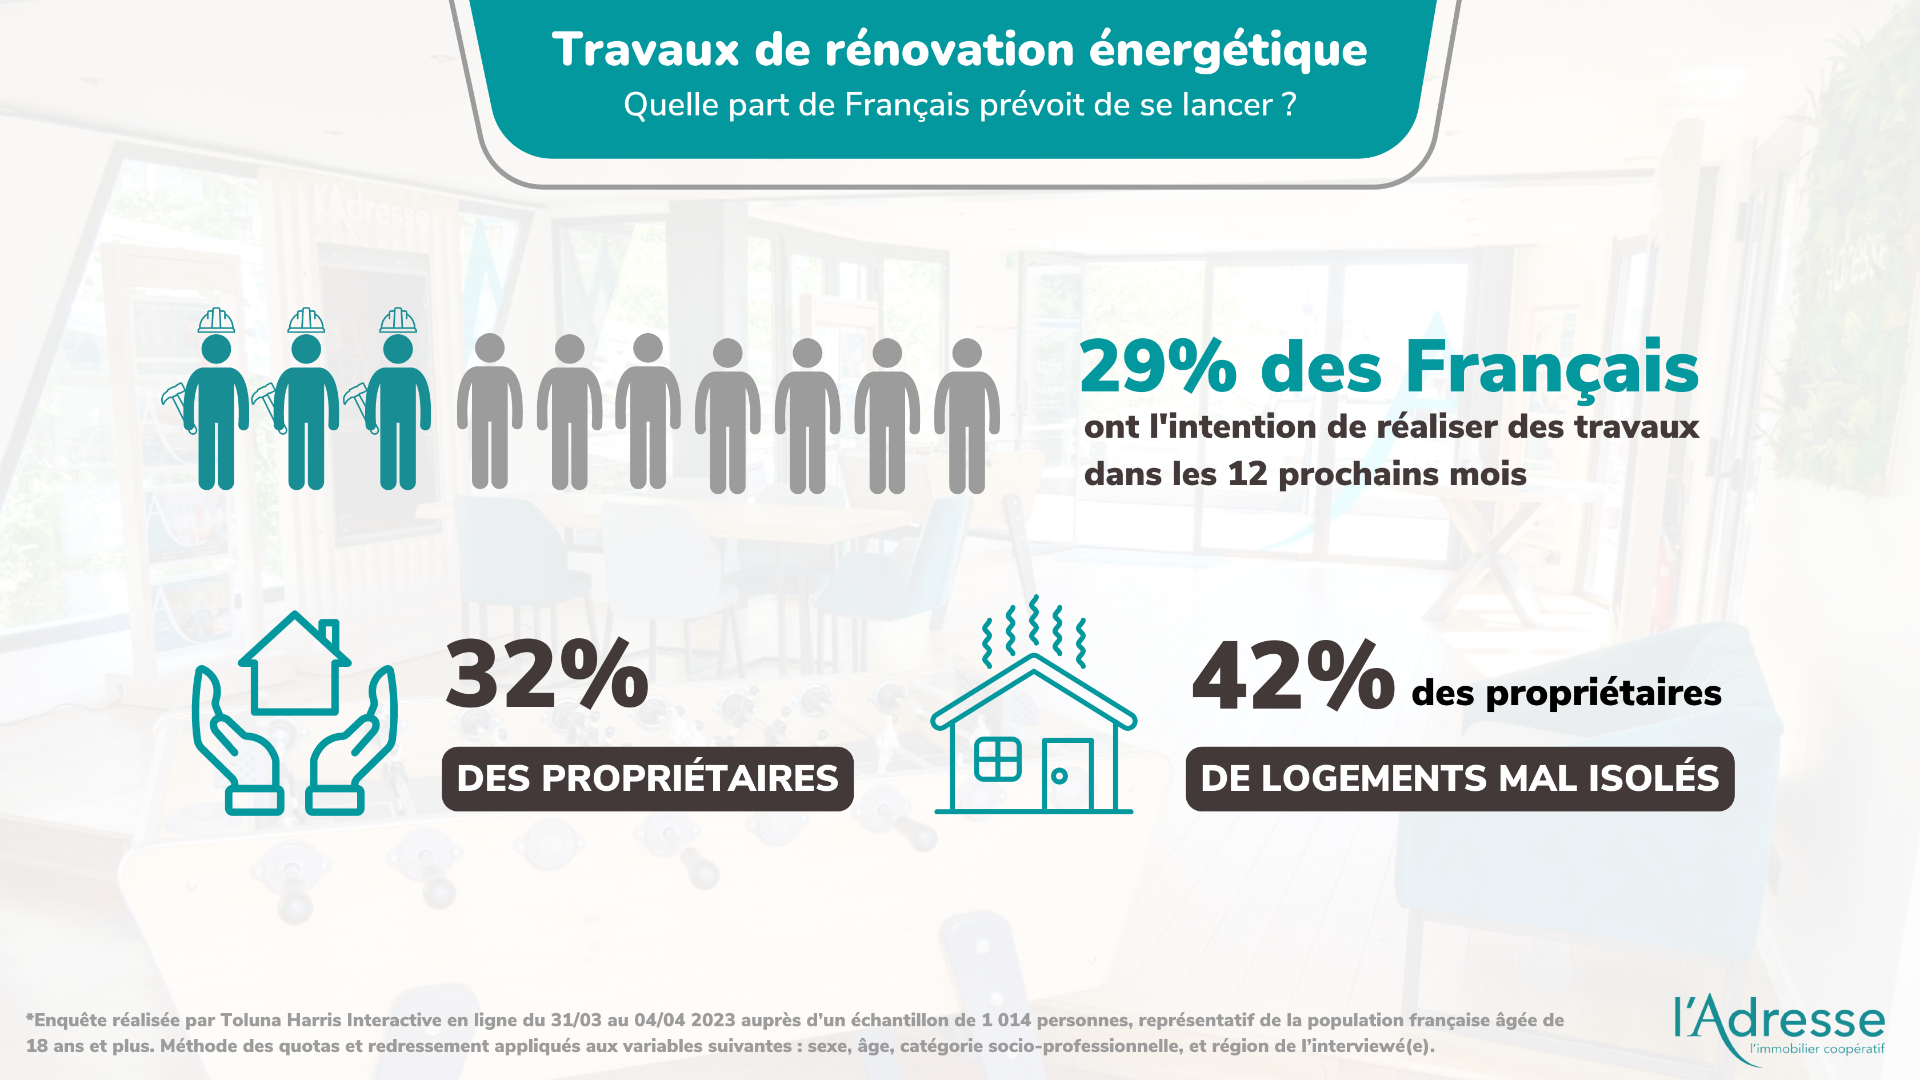 infographie sur la part des Français qui prévoit de se lancer dans des travaux de rénovation énergétique